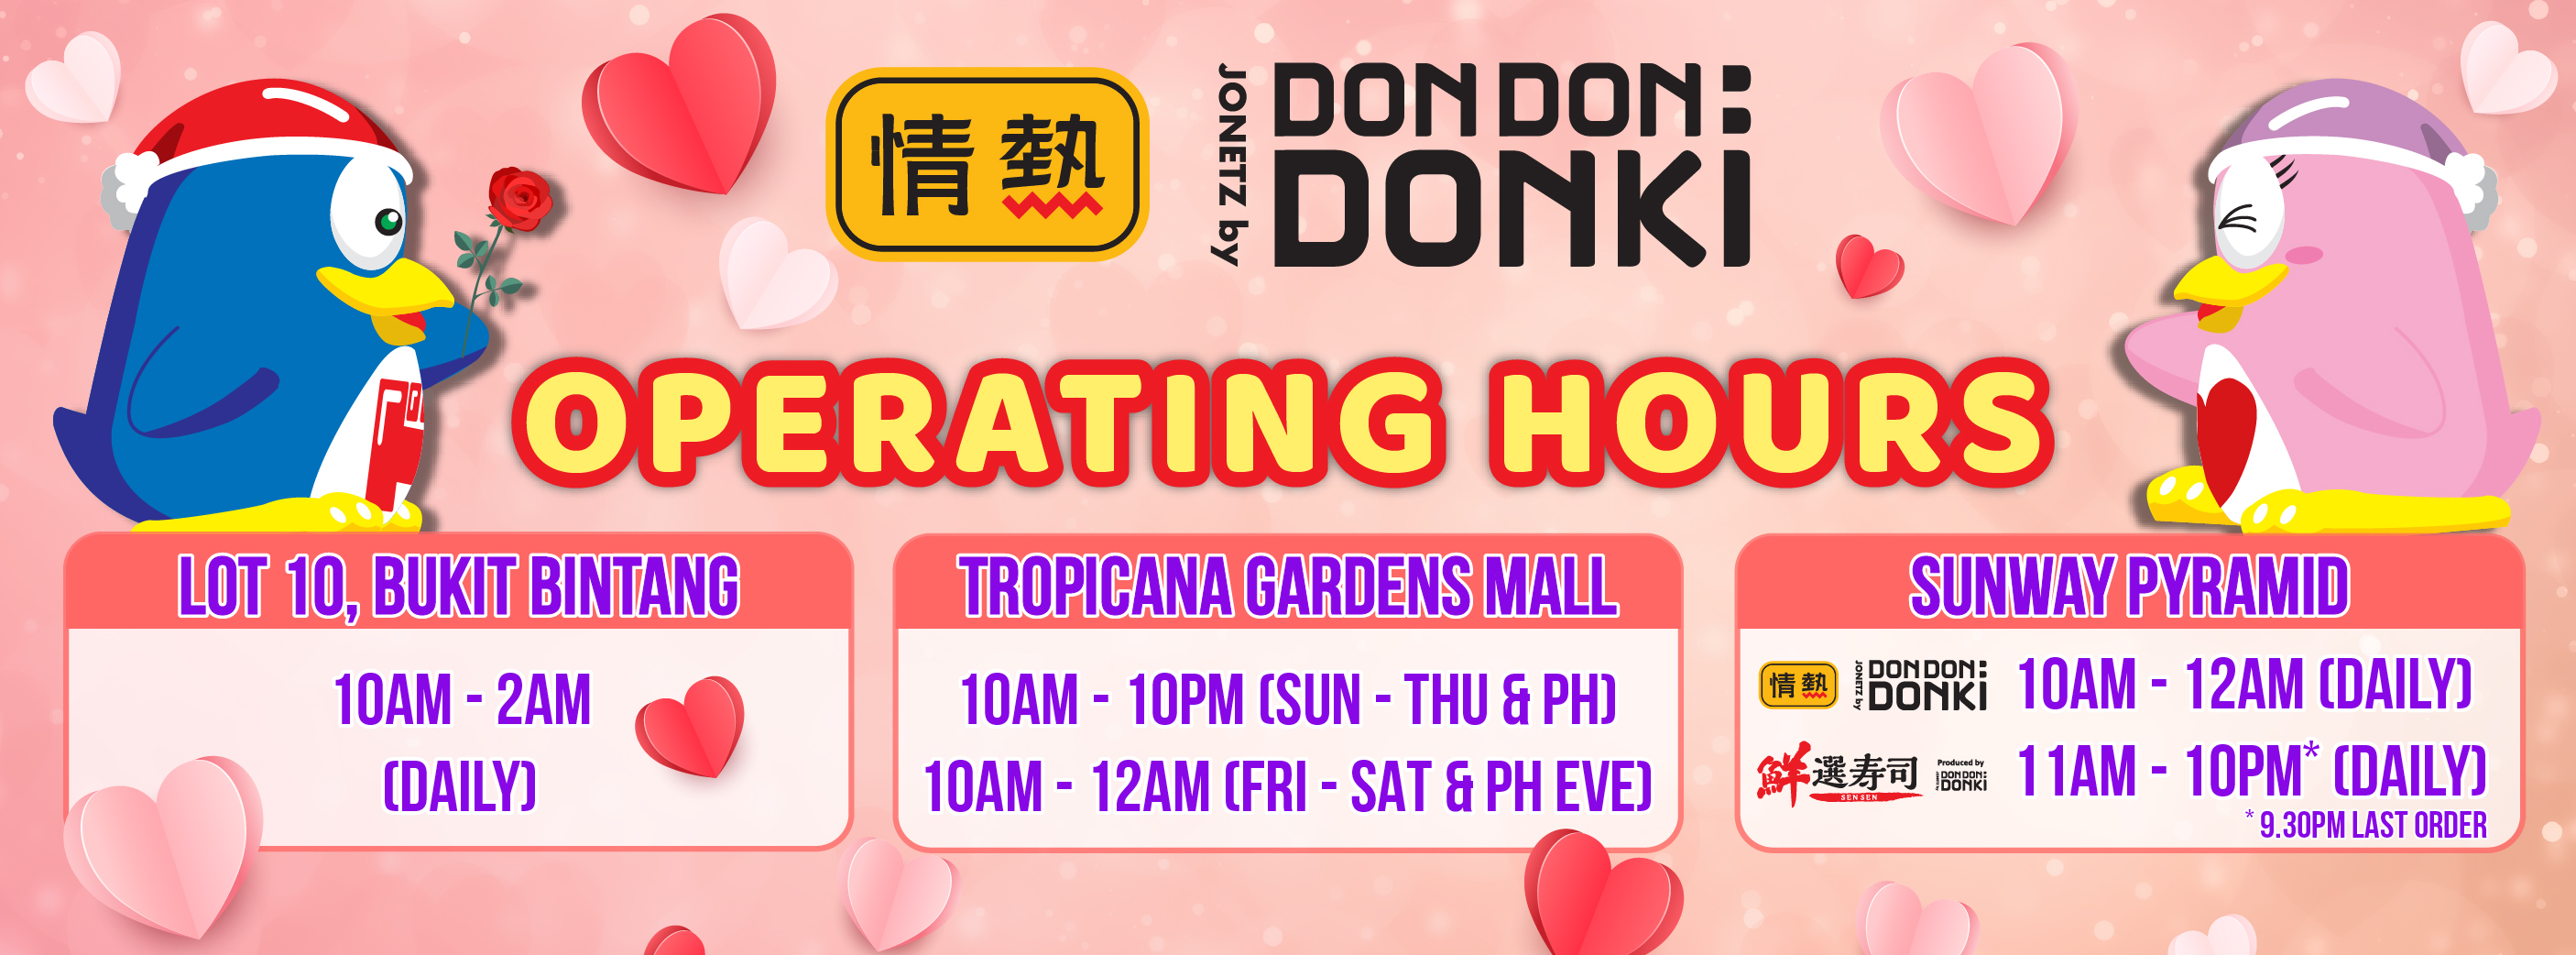 Don don donki tropicana garden